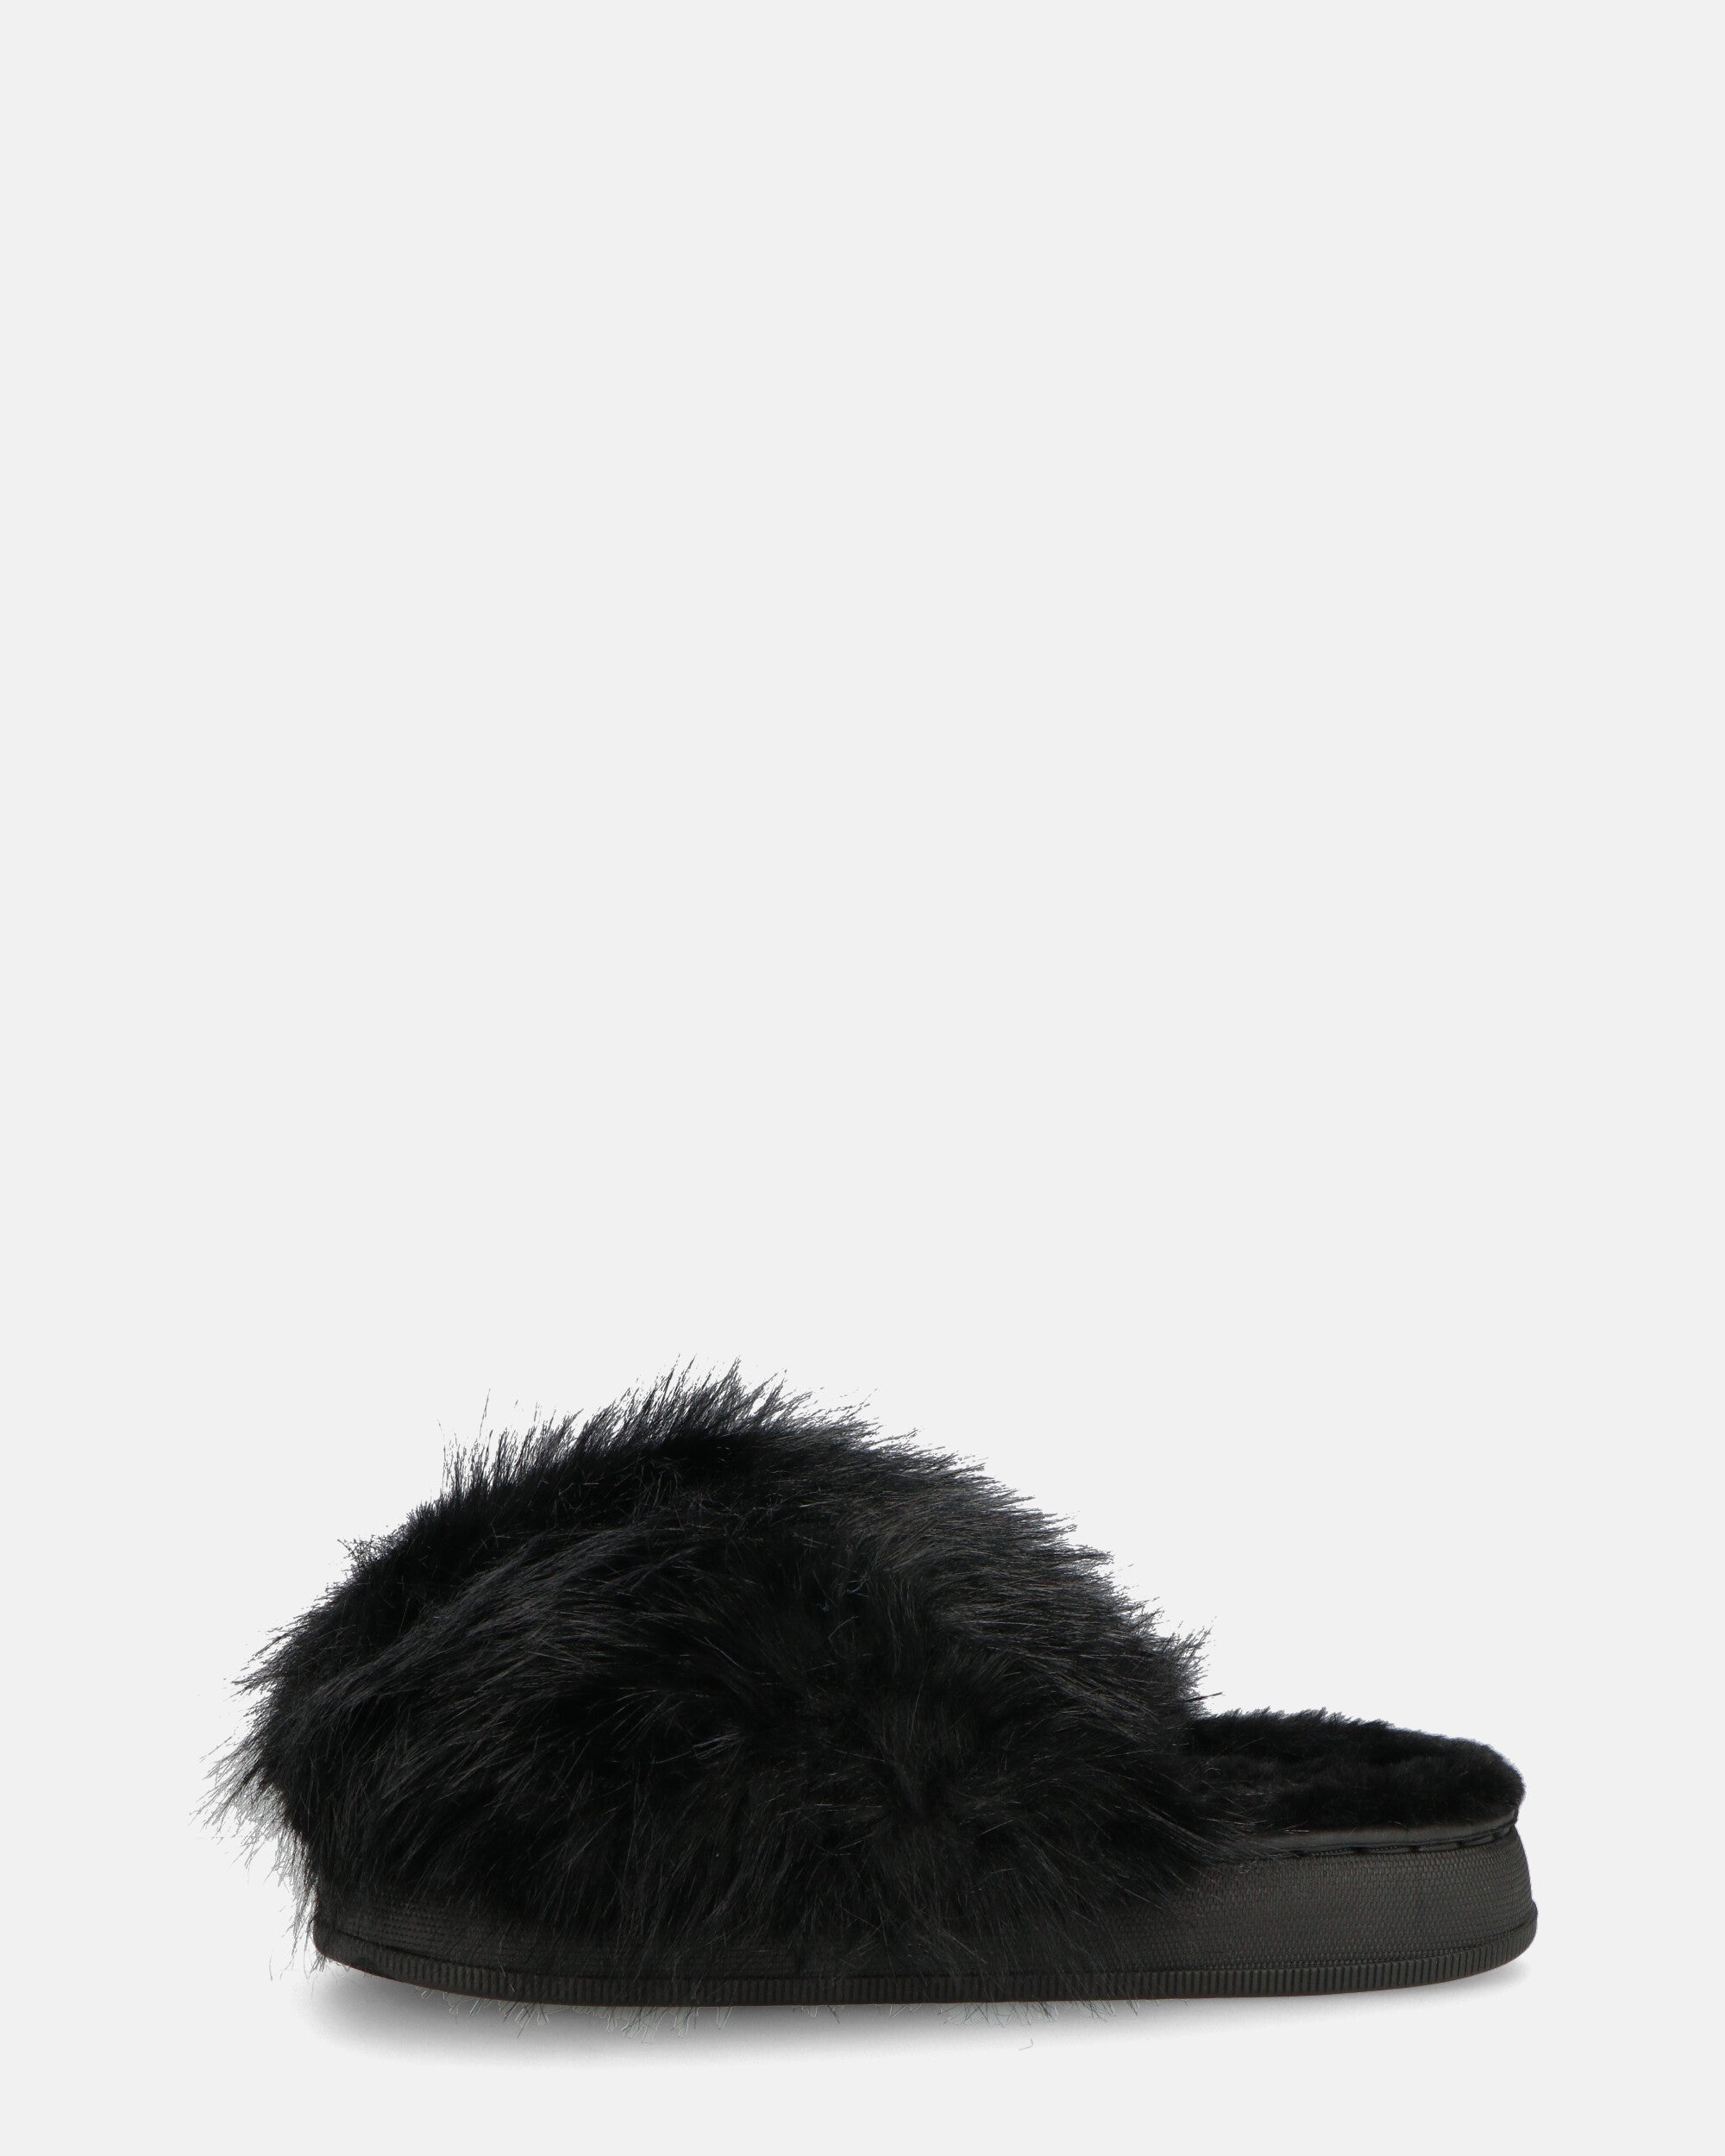 STAFFI - black fur slippers